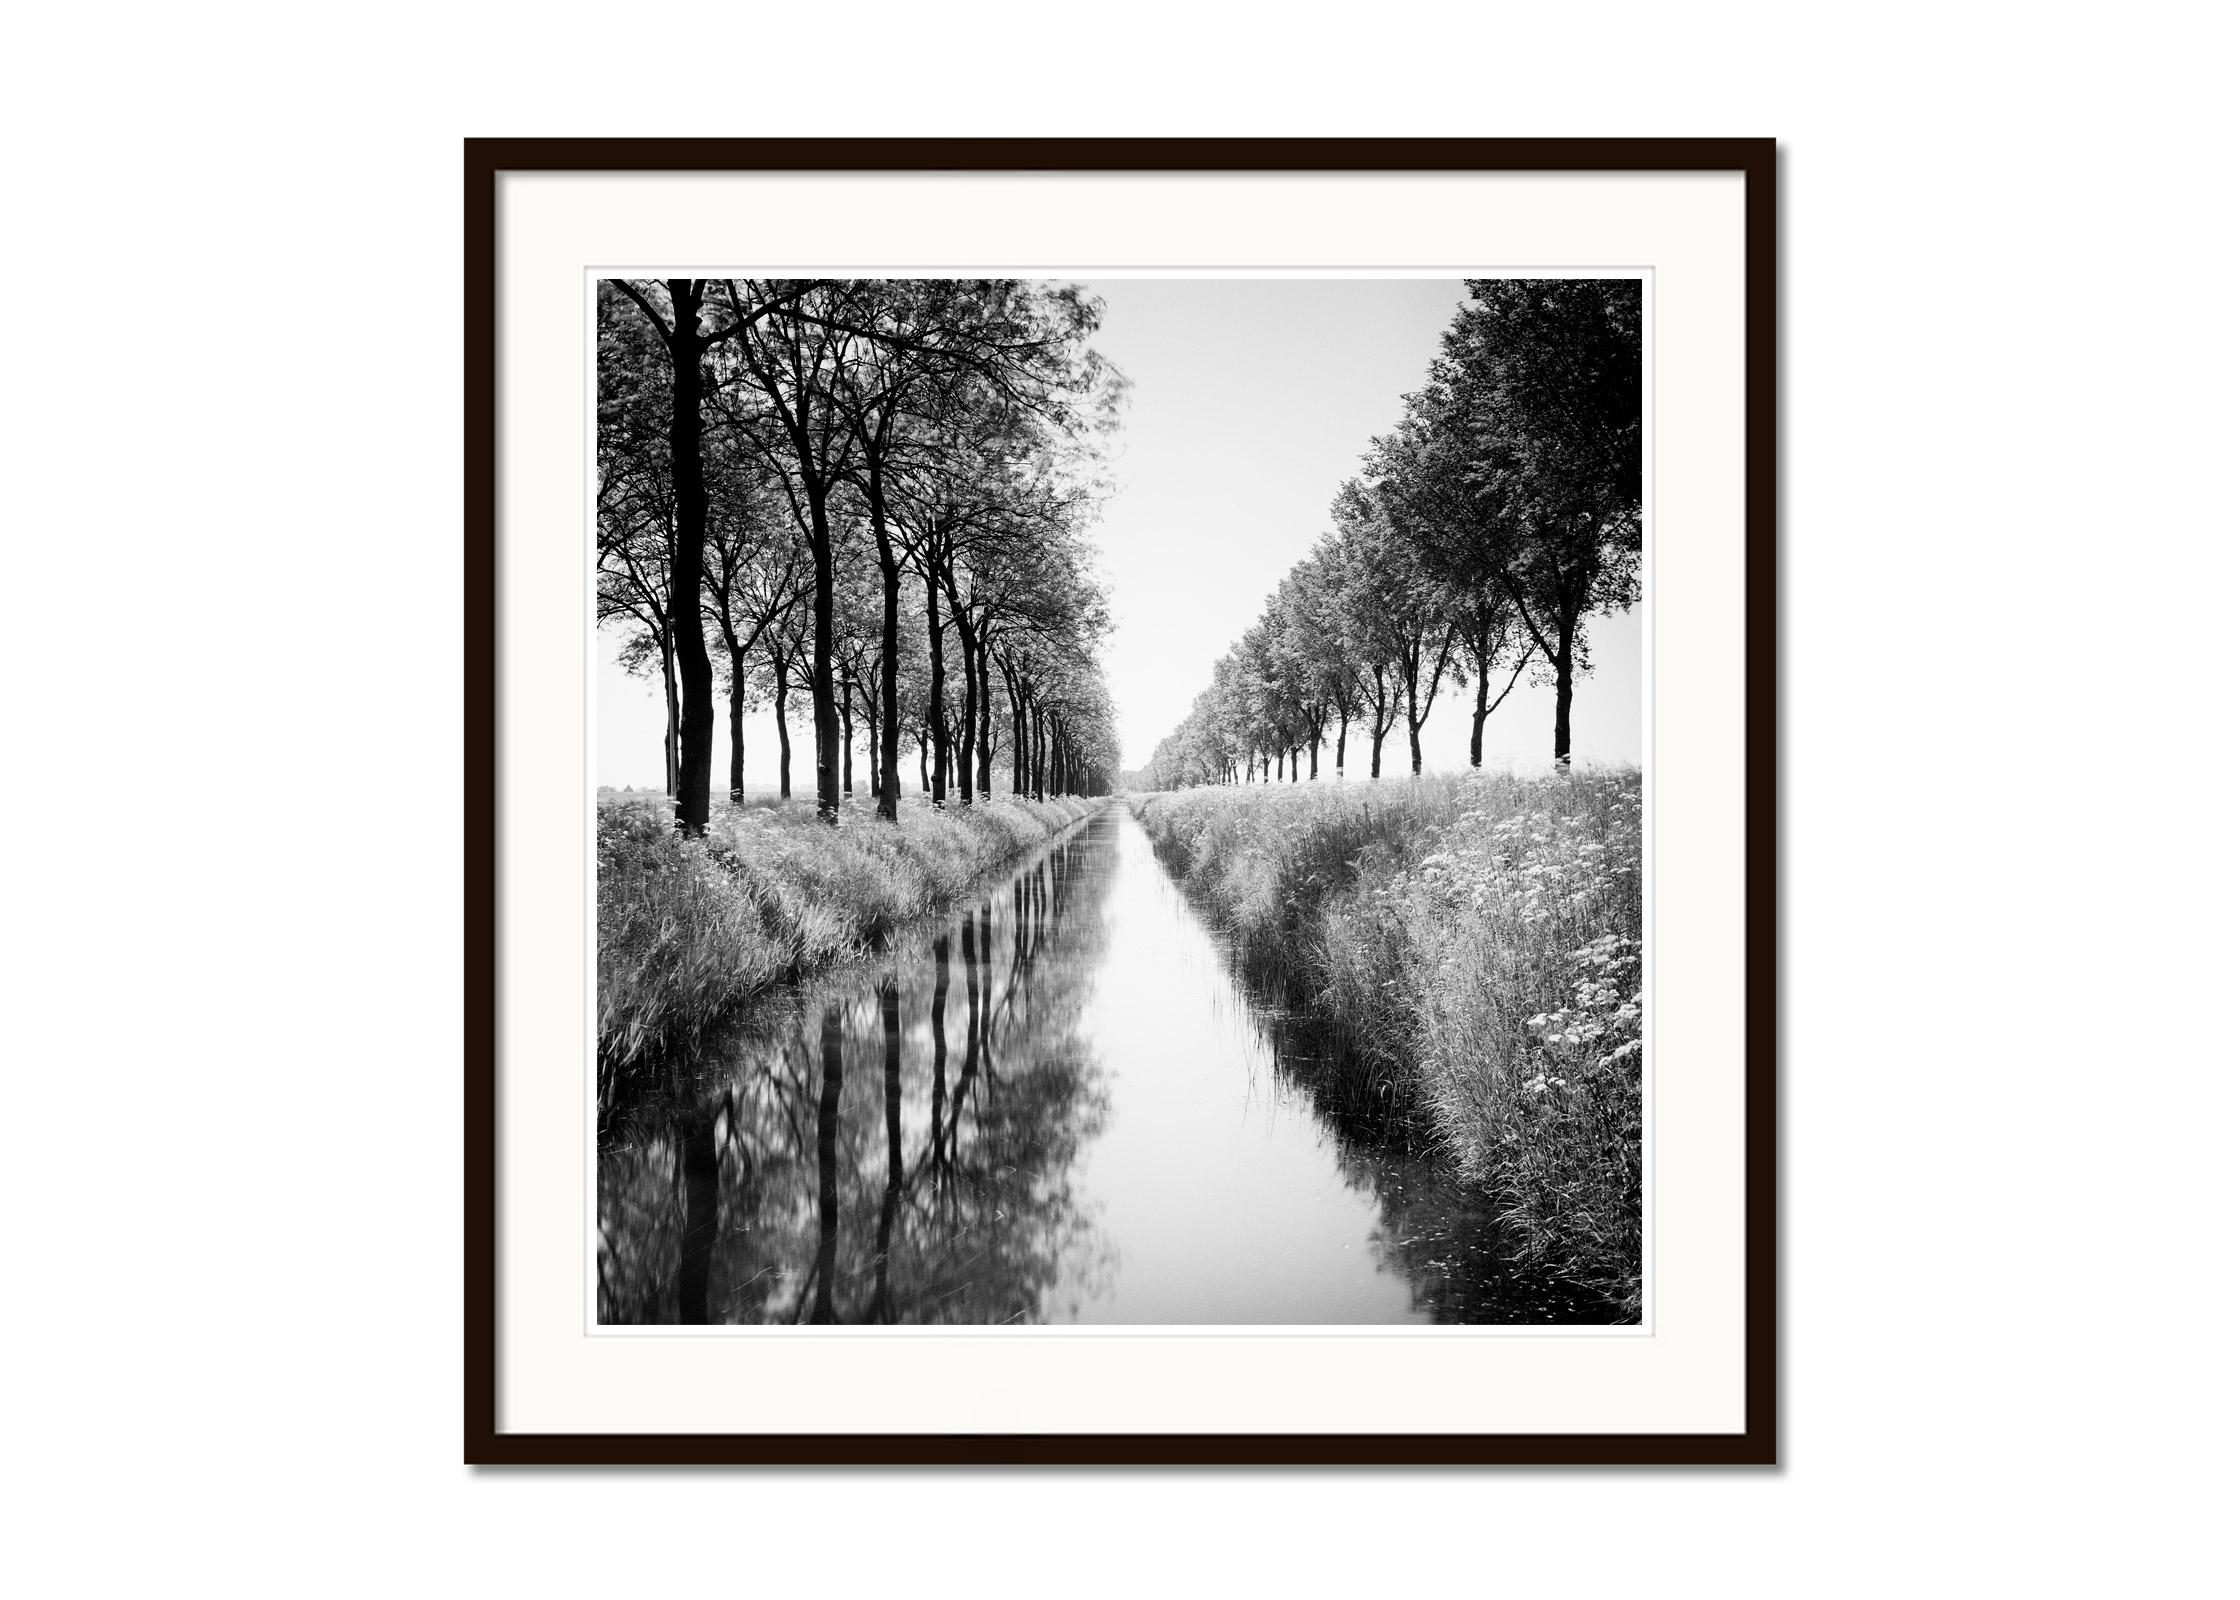 Black and White Fine Art Waterscape Photography - Allee von Bäumen an einem Wassergraben mit Reflexionen im ruhigen Wasser. Pigmenttintendruck, Auflage 9, signiert, betitelt, datiert und nummeriert vom Künstler. Mit Echtheitszertifikat. Bedruckt mit